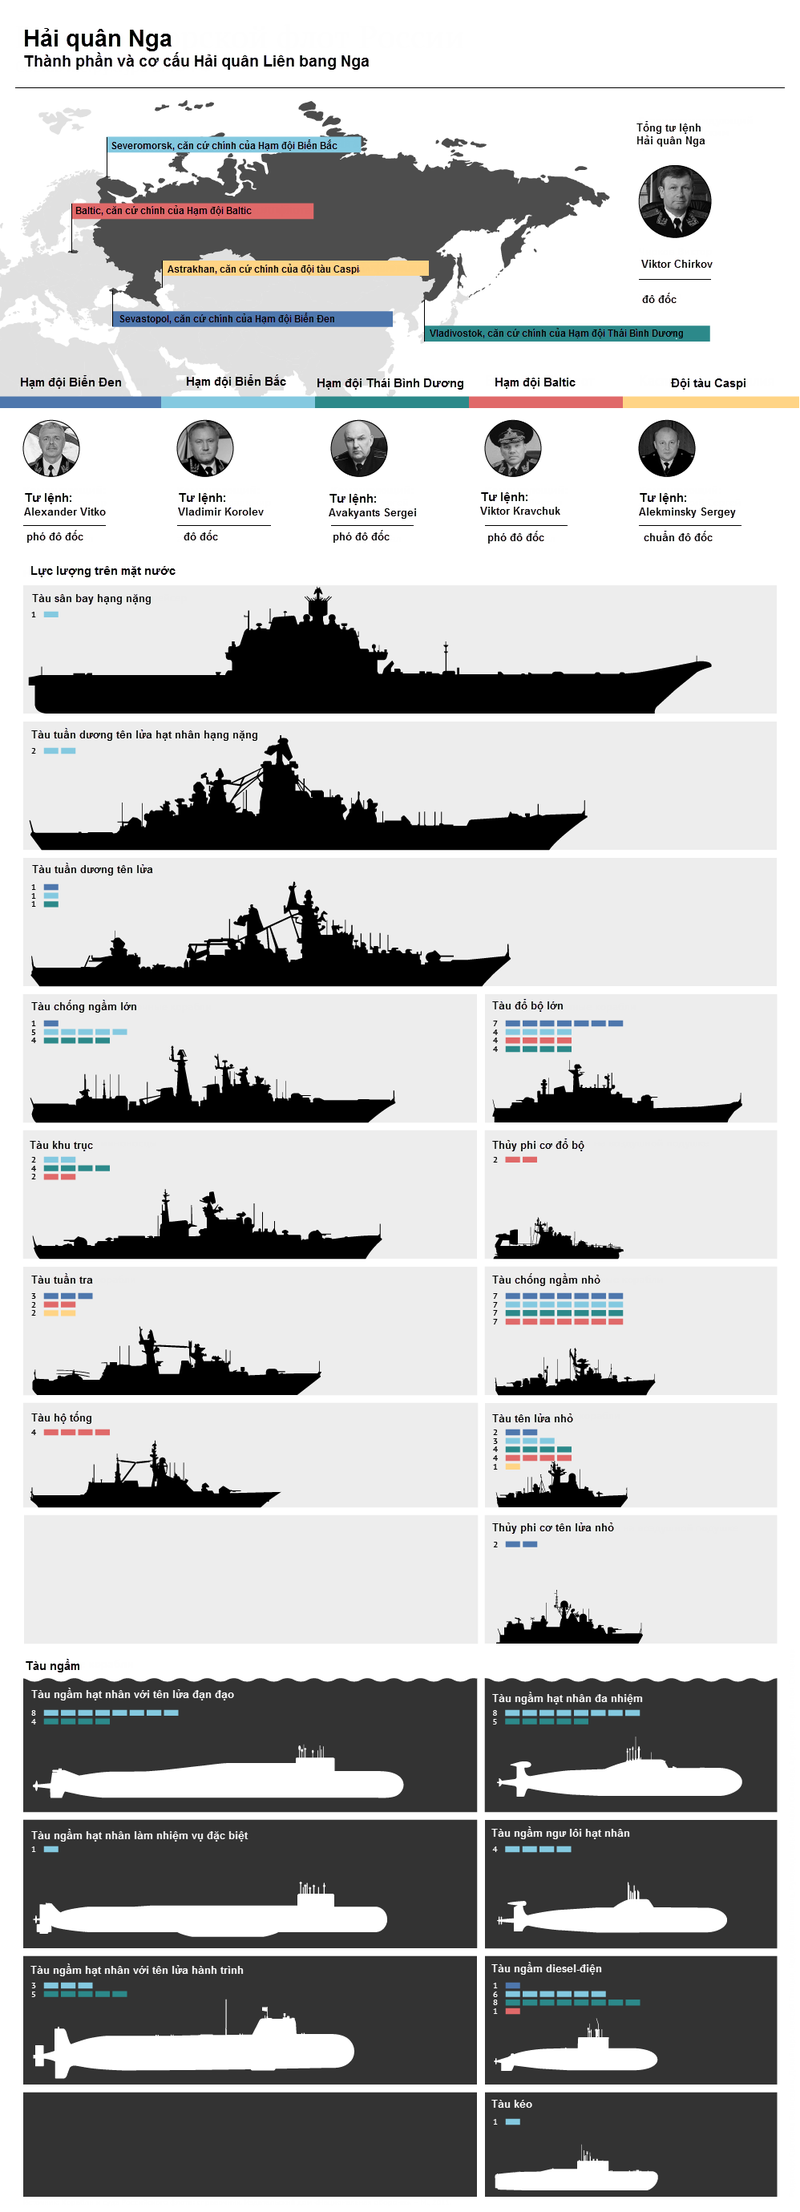 [Infographics] Tìm hiểu thành phần và sức mạnh vũ khí Hải quân Nga - ảnh 1